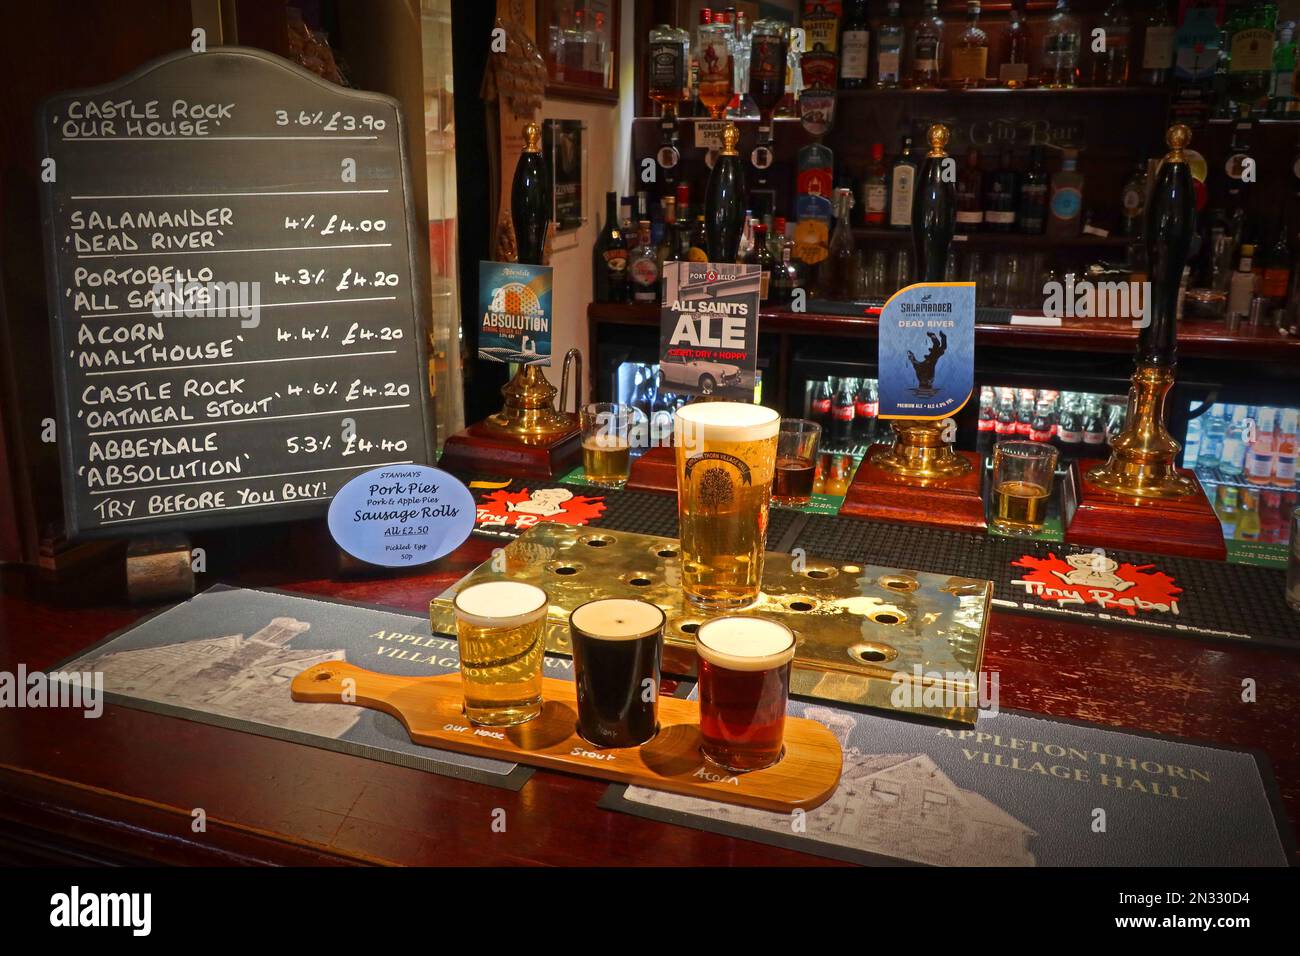 Bar avec tiers paddle, pinte de vraie bière et menu de tableau noir de bières, Appleton Thorn Village Hall, Warrington, Cheshire, Angleterre, Royaume-Uni, WA4 4RT Banque D'Images